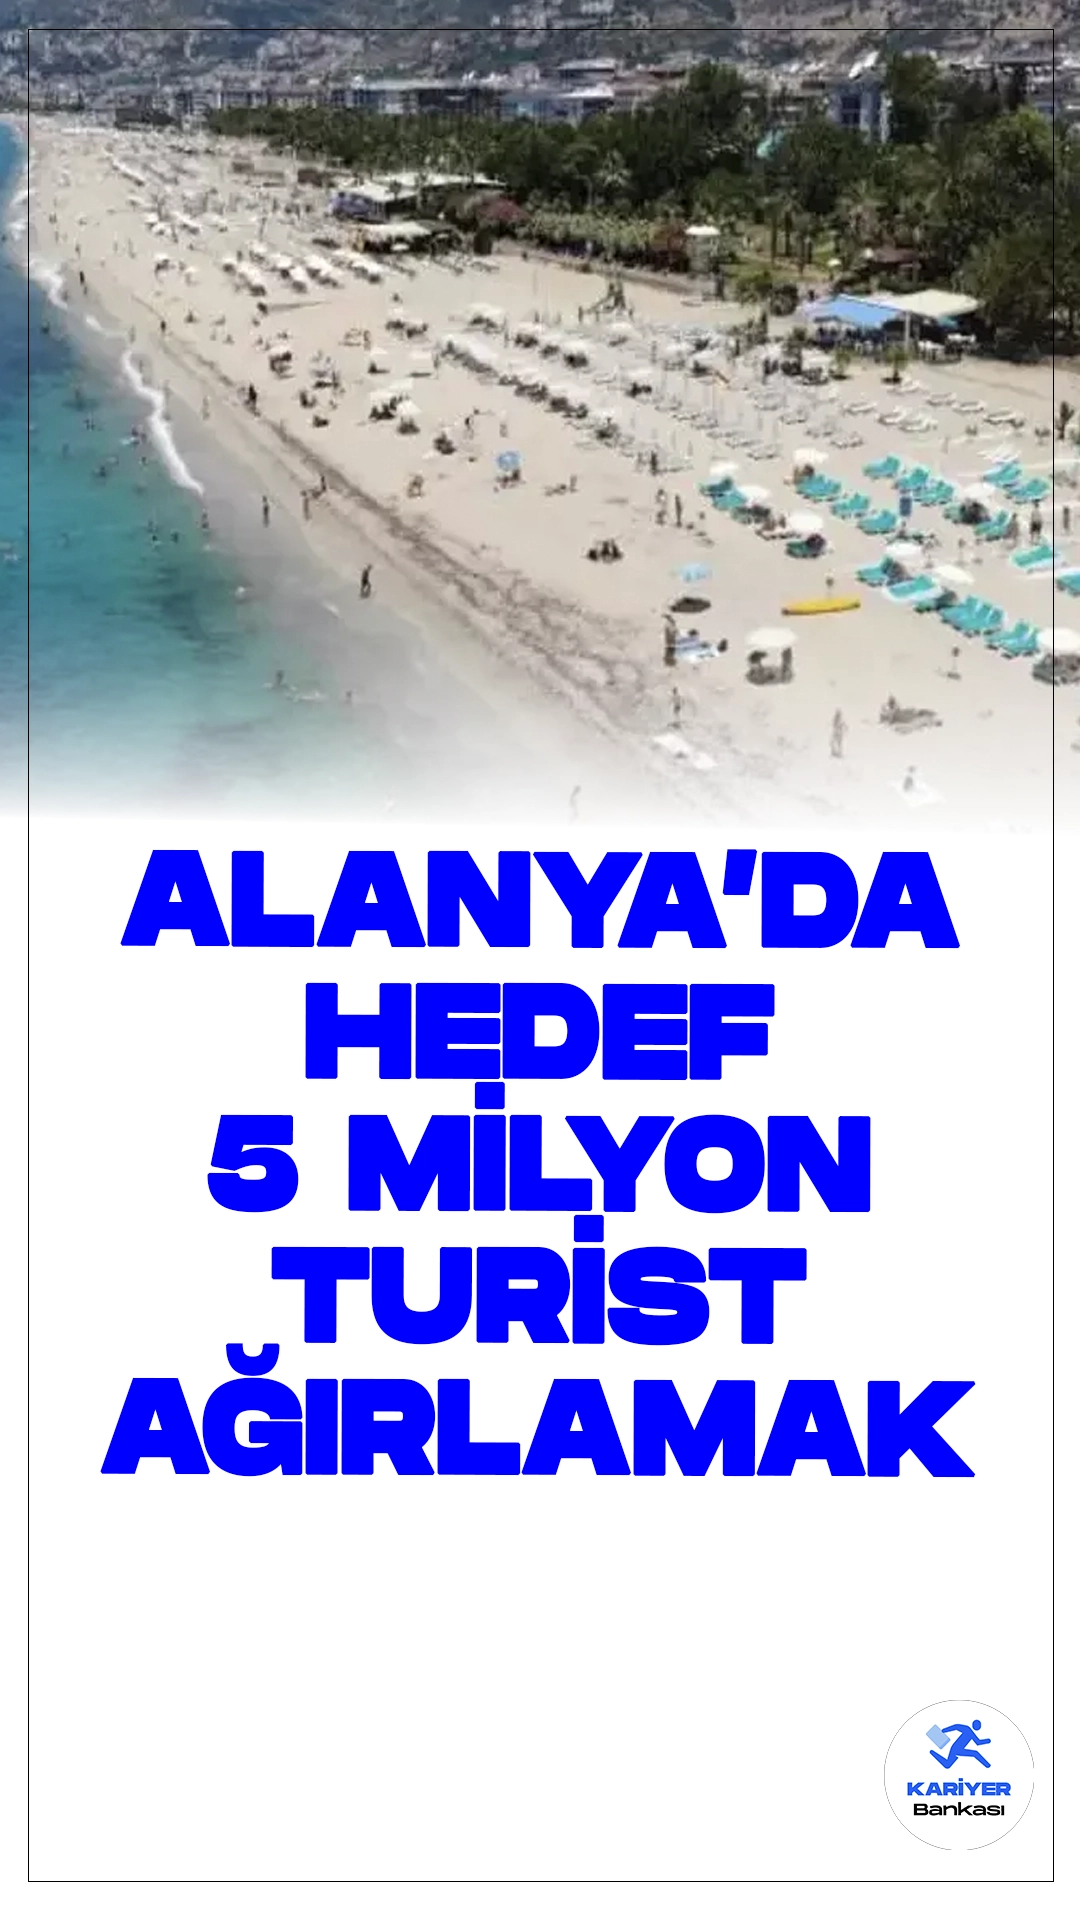 Alanya'da Hedef 5 Milyon Turist Ağırlamak.Antalya'nın gözde turizm merkezi Alanya, bu yıl 5 milyon turist ağırlamayı hedefliyor. Geçen yıl yaklaşık 4,5 milyon misafire ev sahipliği yapan Alanya'da turizmciler, sezonun uzaması ve tanıtım çalışmalarının sonucu turist sayısının 2024'te daha da artmasını bekliyor.